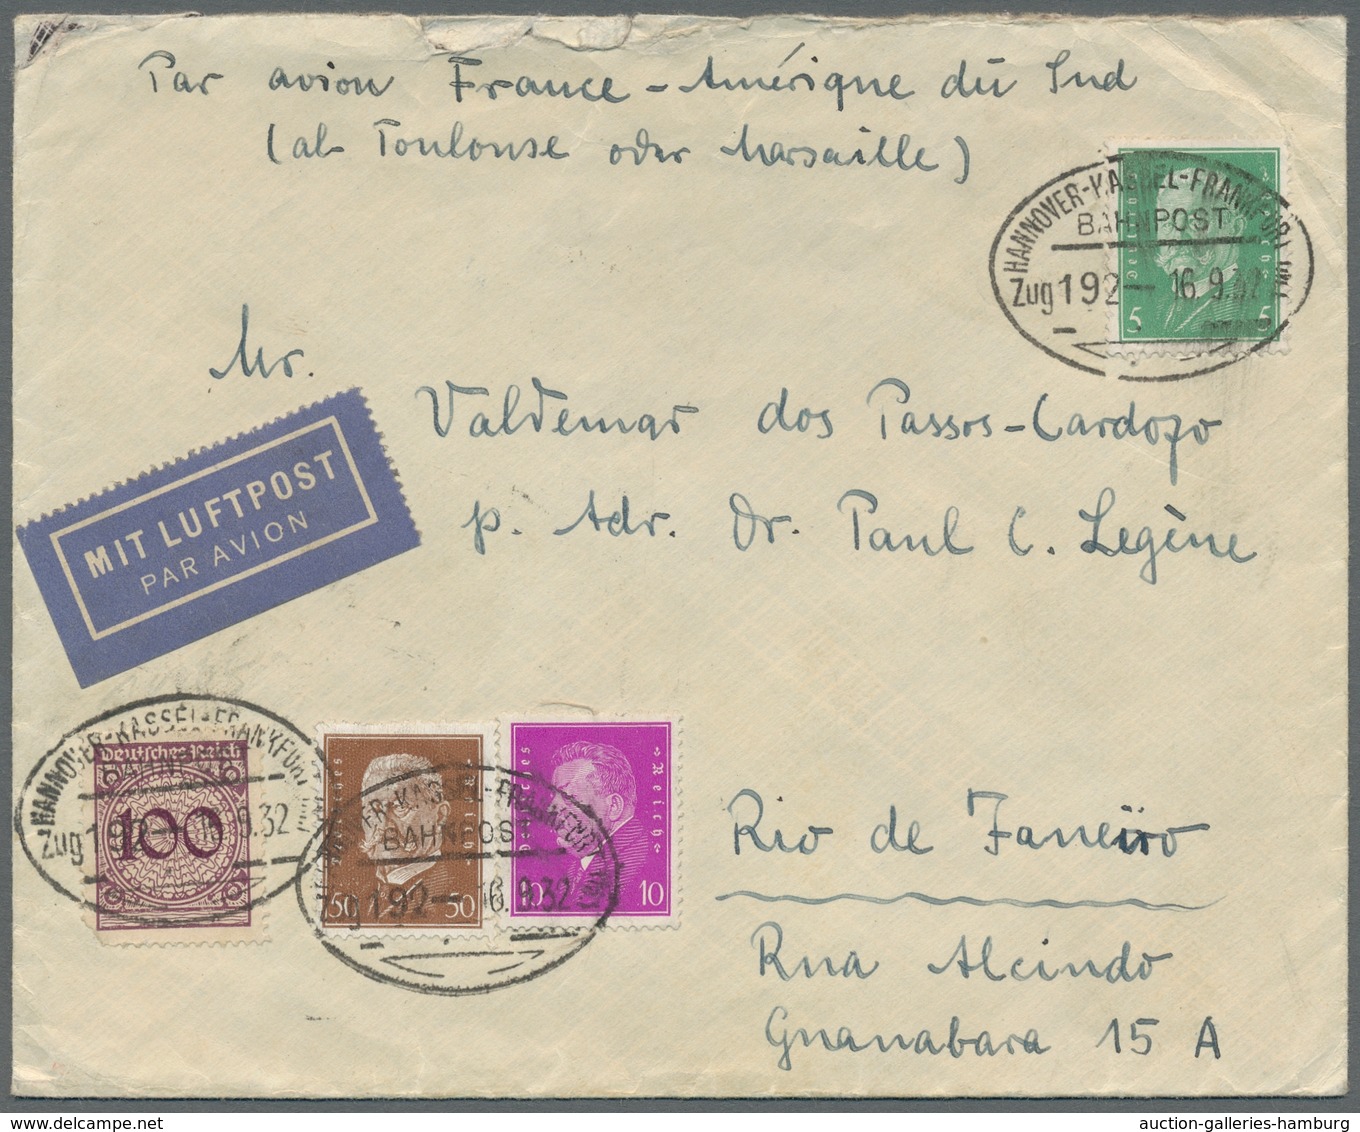 Deutsches Reich: 1932-1938, Bestand von 9 Luftpostbriefen welche alle nach Brasilien gelaufen sind m